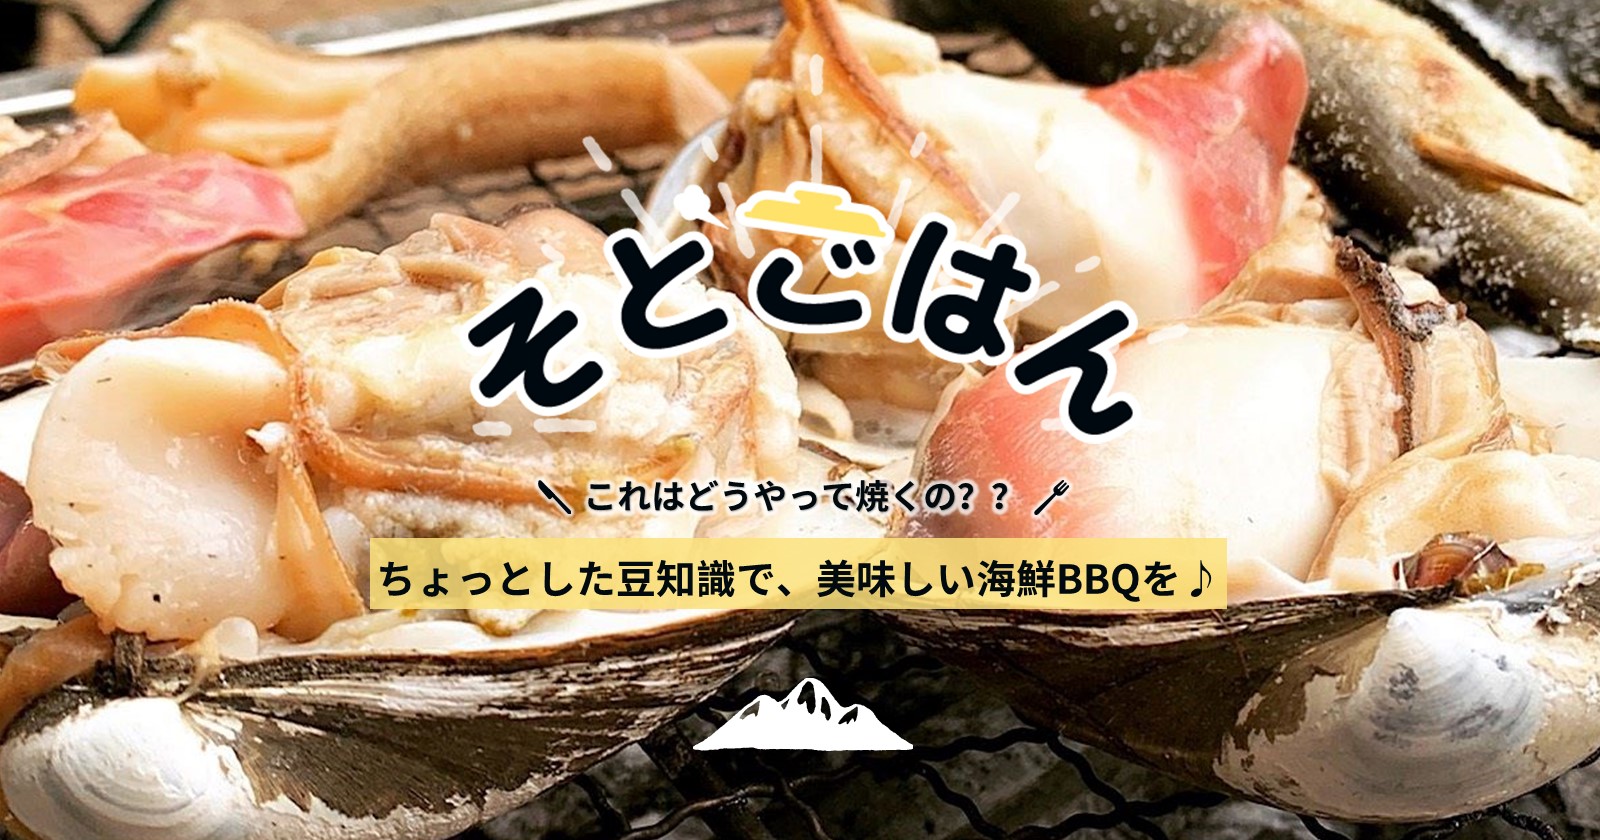 q バーベキューで失敗しない 魚介類の食べ方 焼き方 捌き さばき 方 ホタテ 牡蠣 蛤編 ーそとごはんー Takibi タキビ キャンプ グランピングなどアウトドアの総合情報サイト